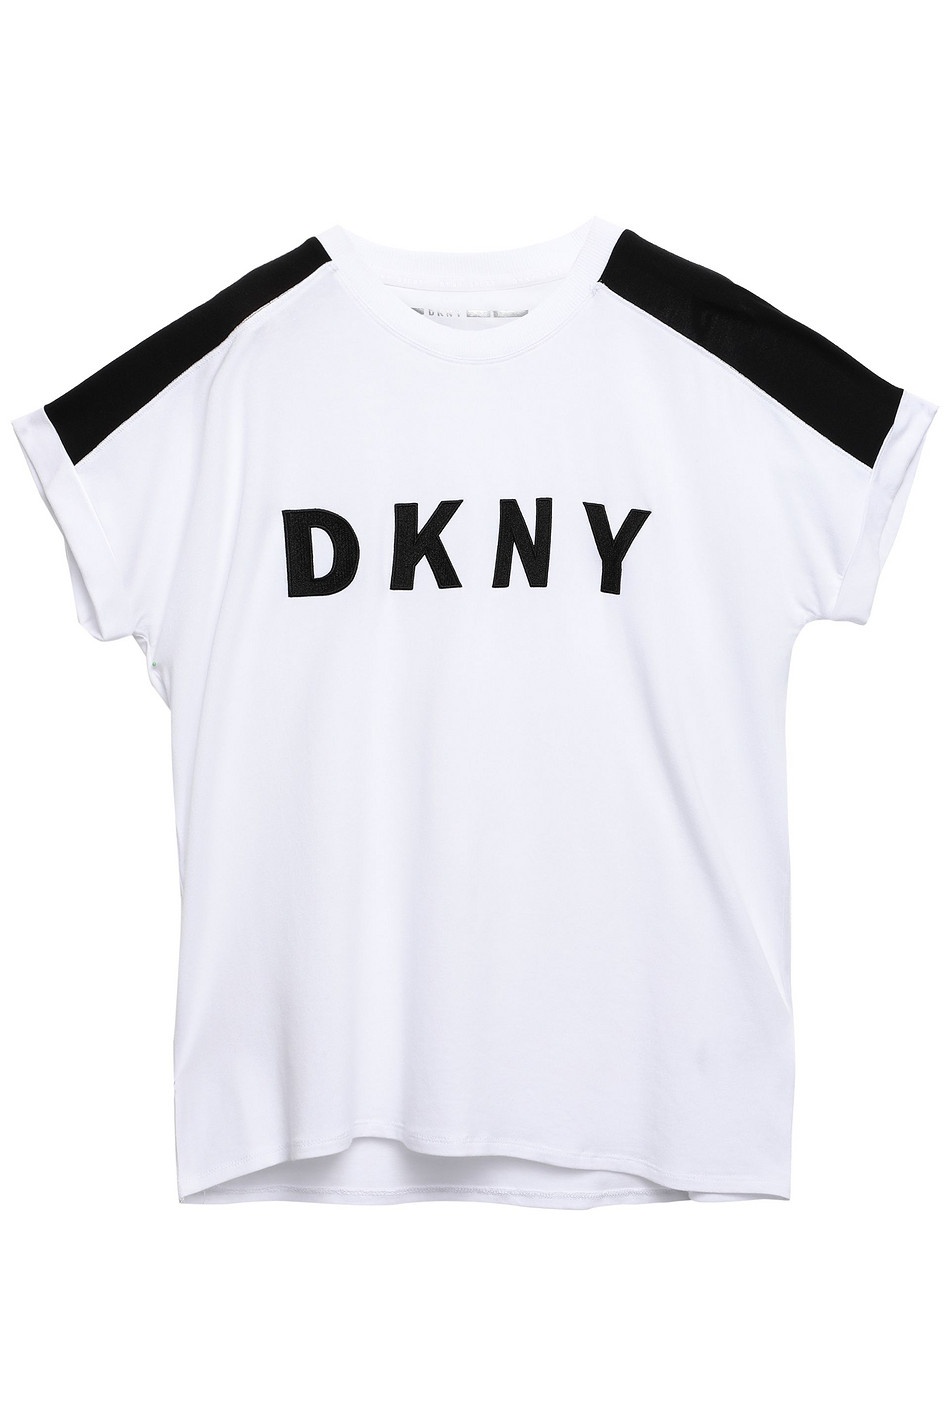 Футболка DKNY, размер М. Большемерит